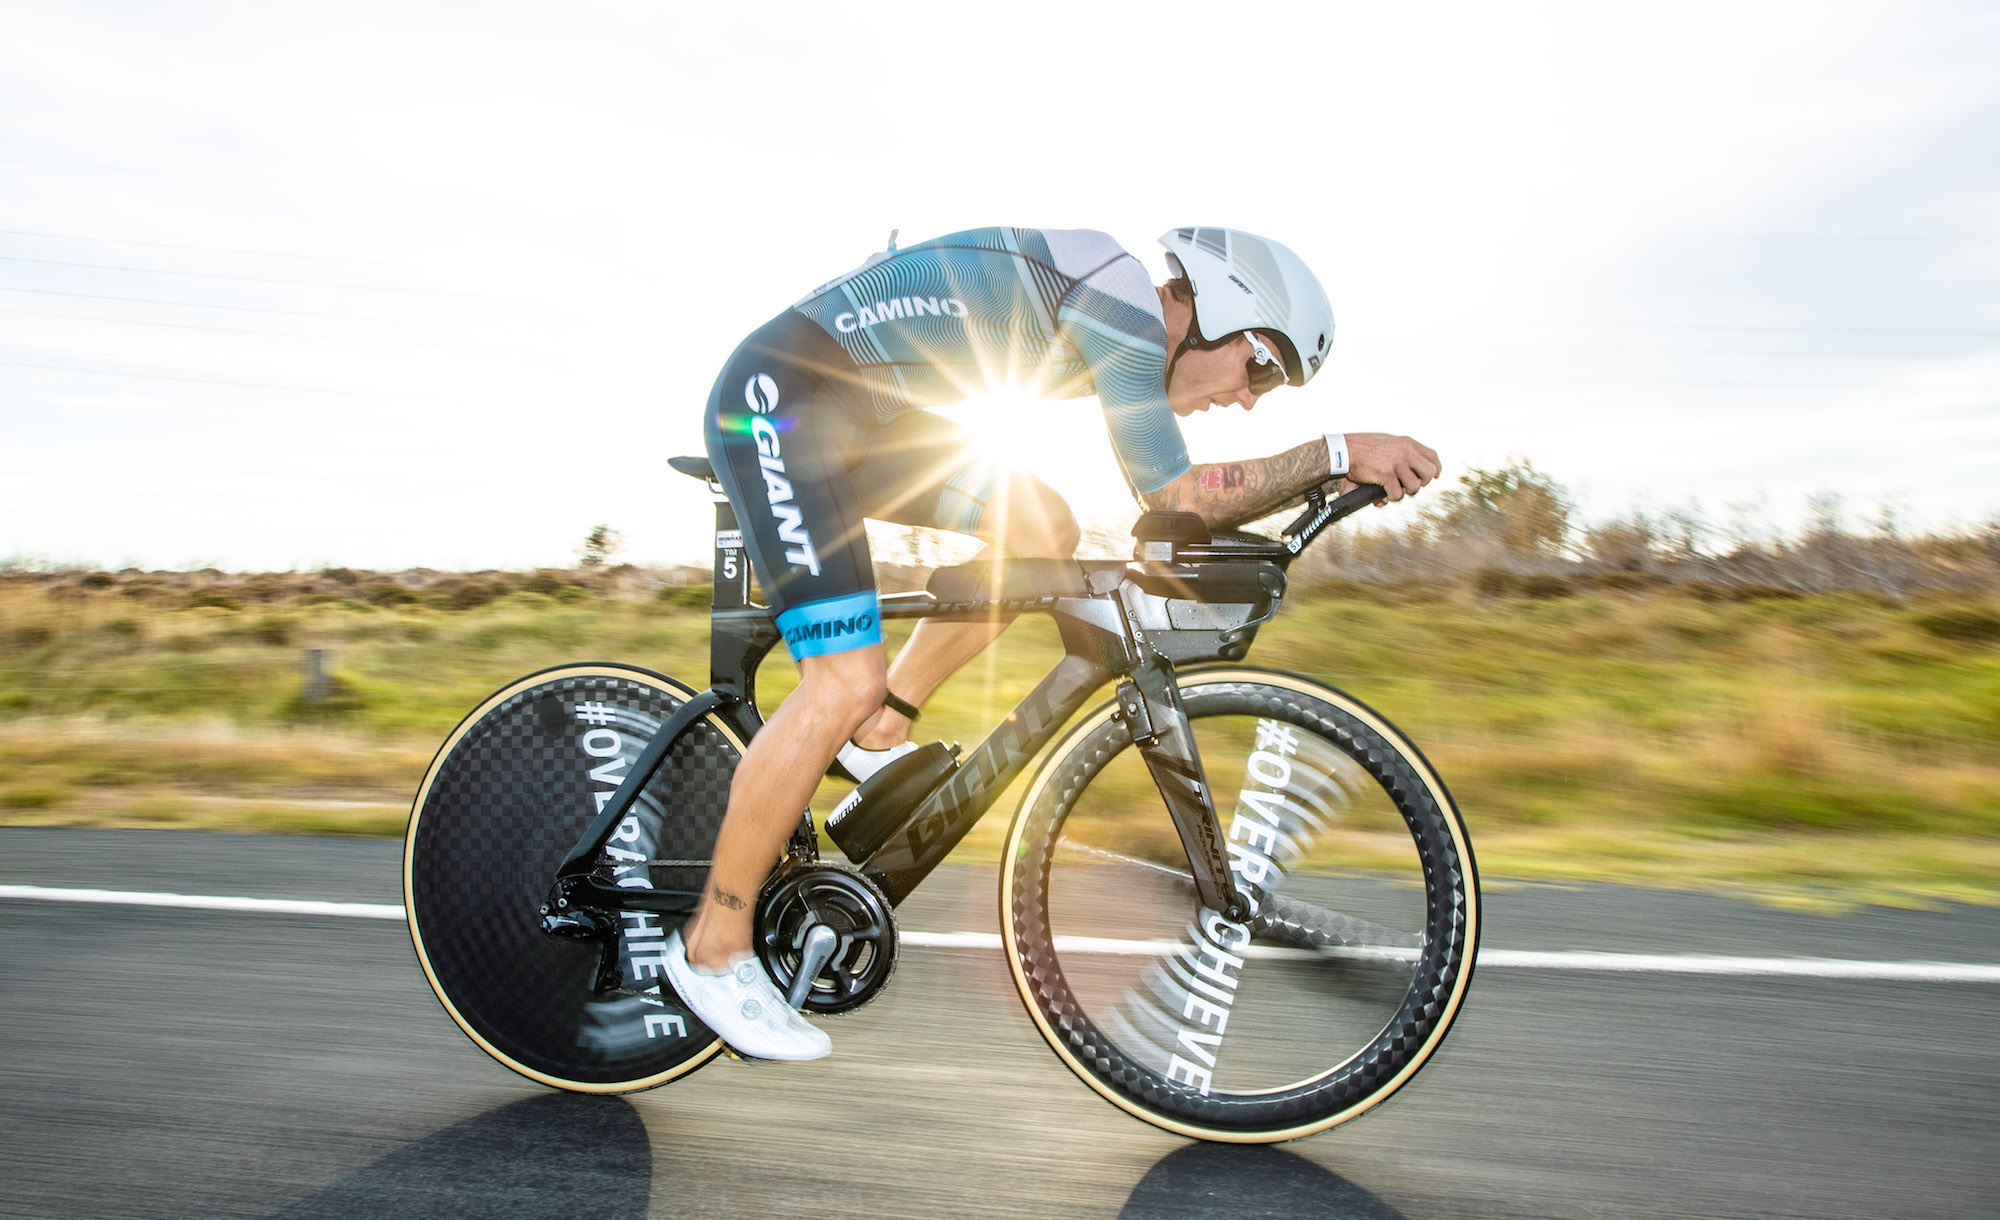 Berkel Sprints to Podium at Ironman 70.3 Geelong! | Giant Bicycles ...